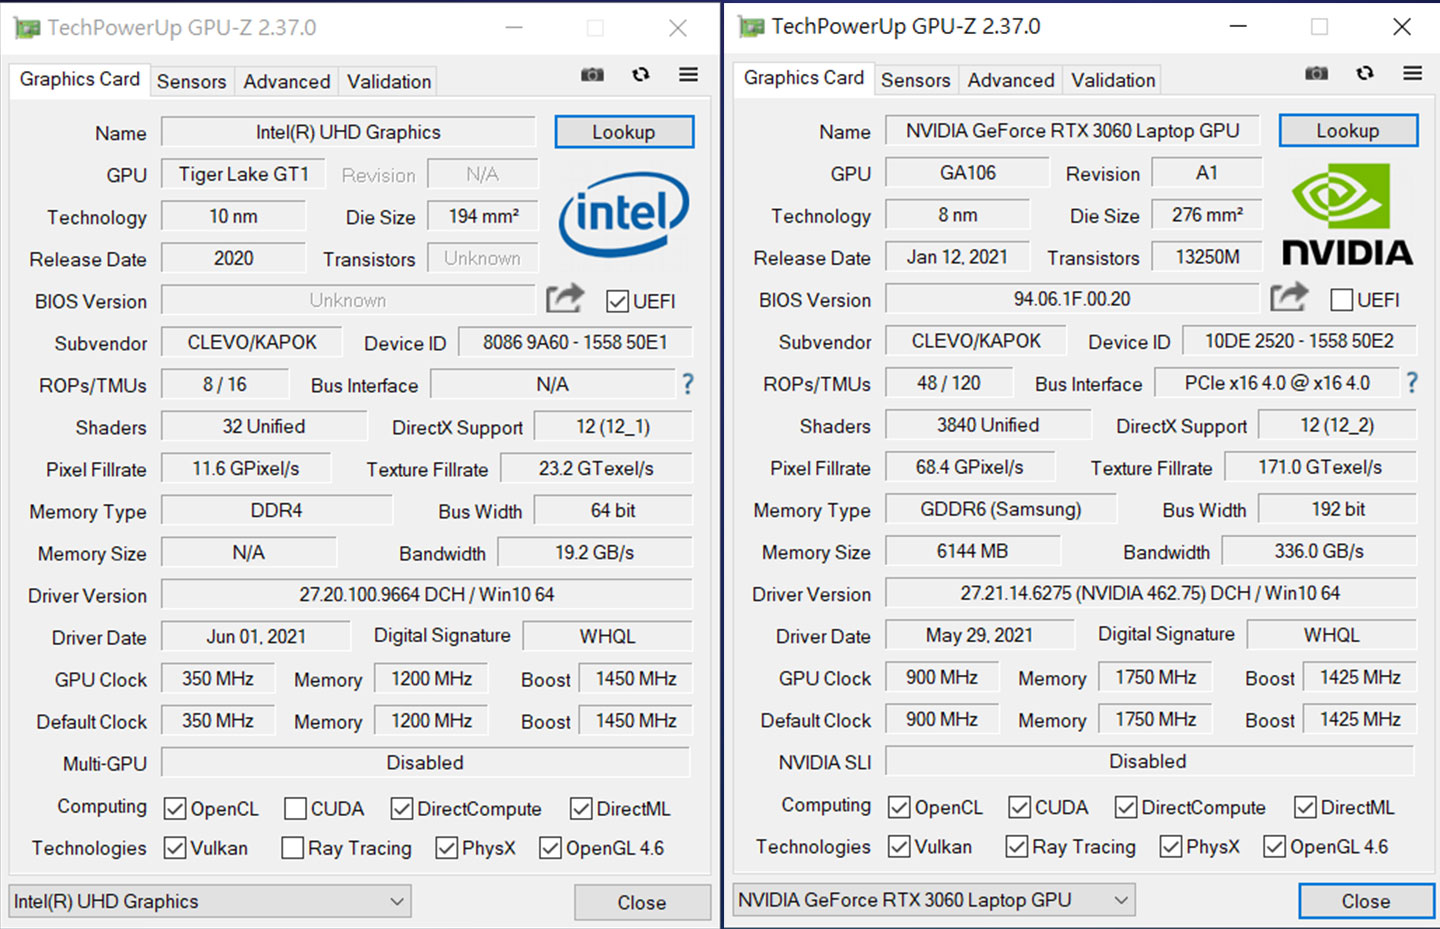 內建整合型顯卡 Intel UHD Graphics 與 NVIDIA GeForce RTX 3060 6GB GDDR6 筆記型電腦 GPU 的詳細規格資料。